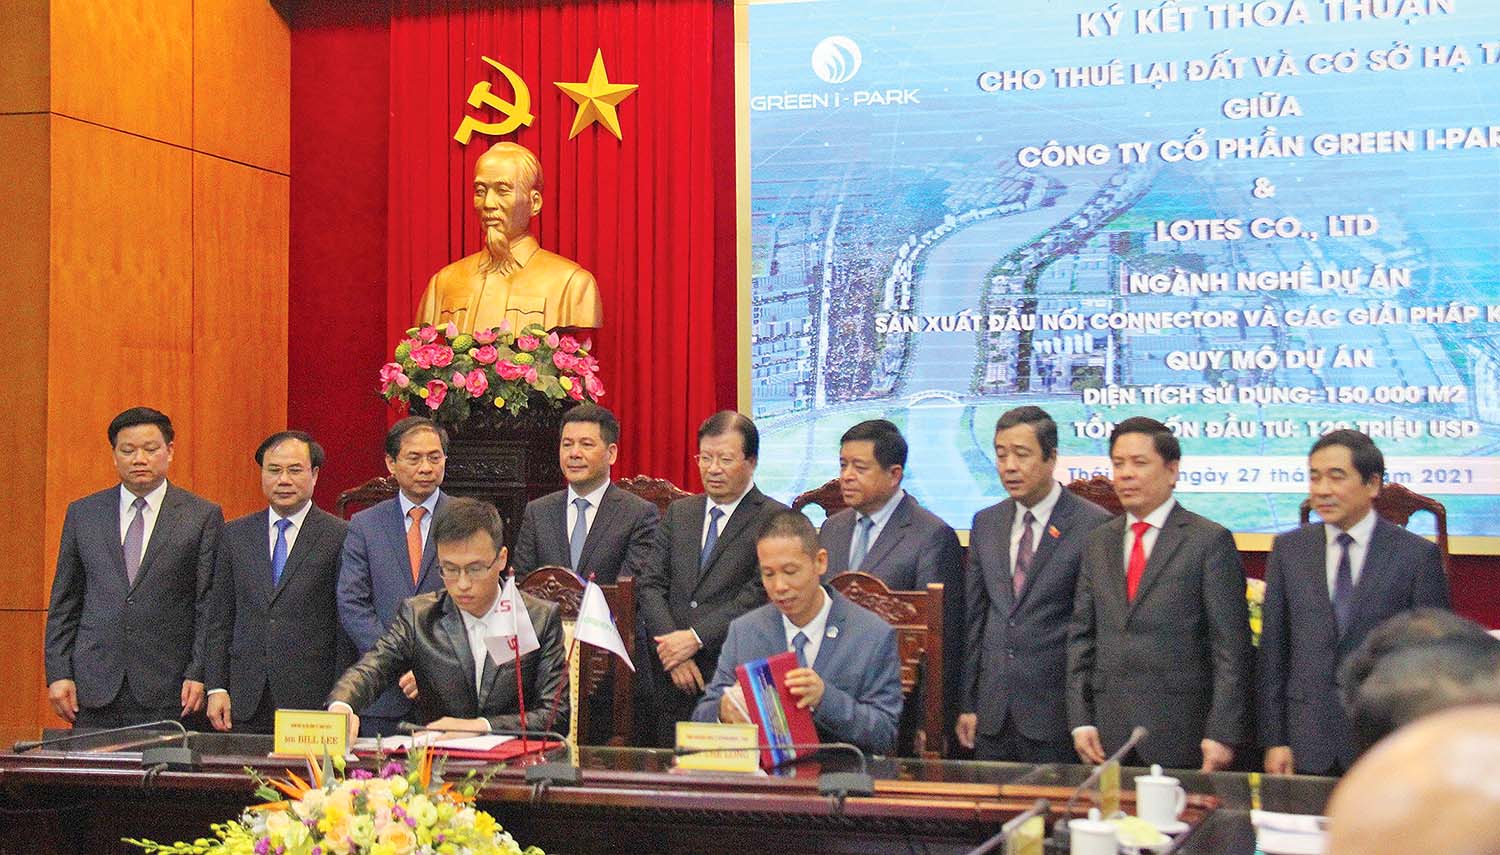 Tổng giám đốc Công ty cổ phần Green i-Park Bùi Thế Long (người ngồi bên phải) ký thỏa thuận đầu tư với nhà đầu tư thứ cấp - Công ty TNHH  Lotes Việt Nam, dưới sự chứng kiến của lãnh đạo Trung ương, lãnh đạo tỉnh Thái Bình